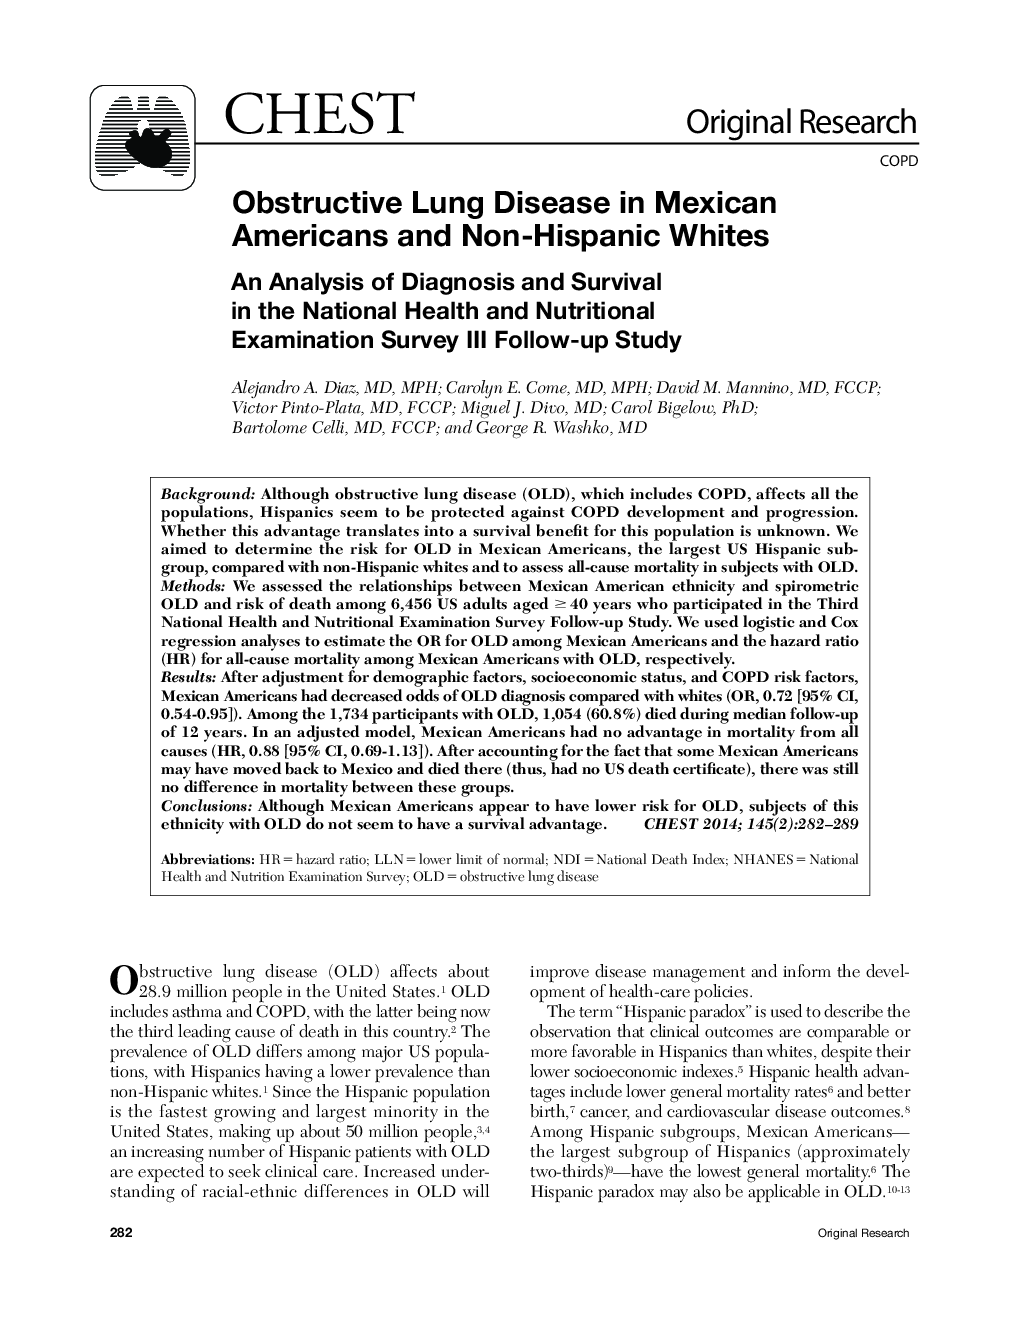 بیماری های انسدادی ریه در آمریکایی های مکزیکی و سفید پوستان غیر اسپانیایی 